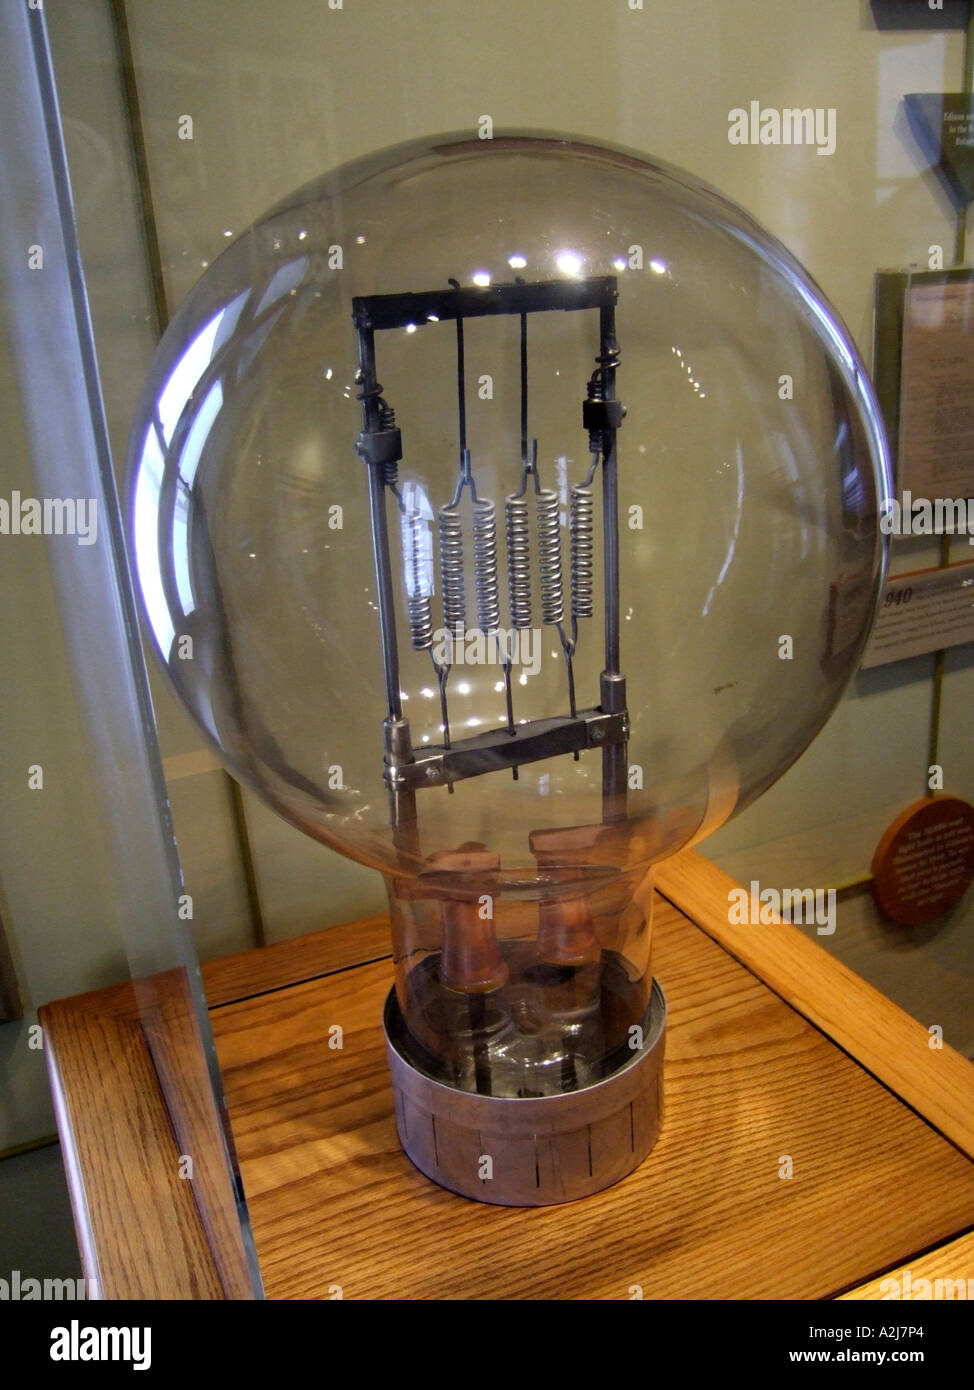 Reproduction historique d'une lampe de feu Thomas Elva Edison, exposées au musée de la ville d'enfance à Port Huron au Michigan Banque D'Images